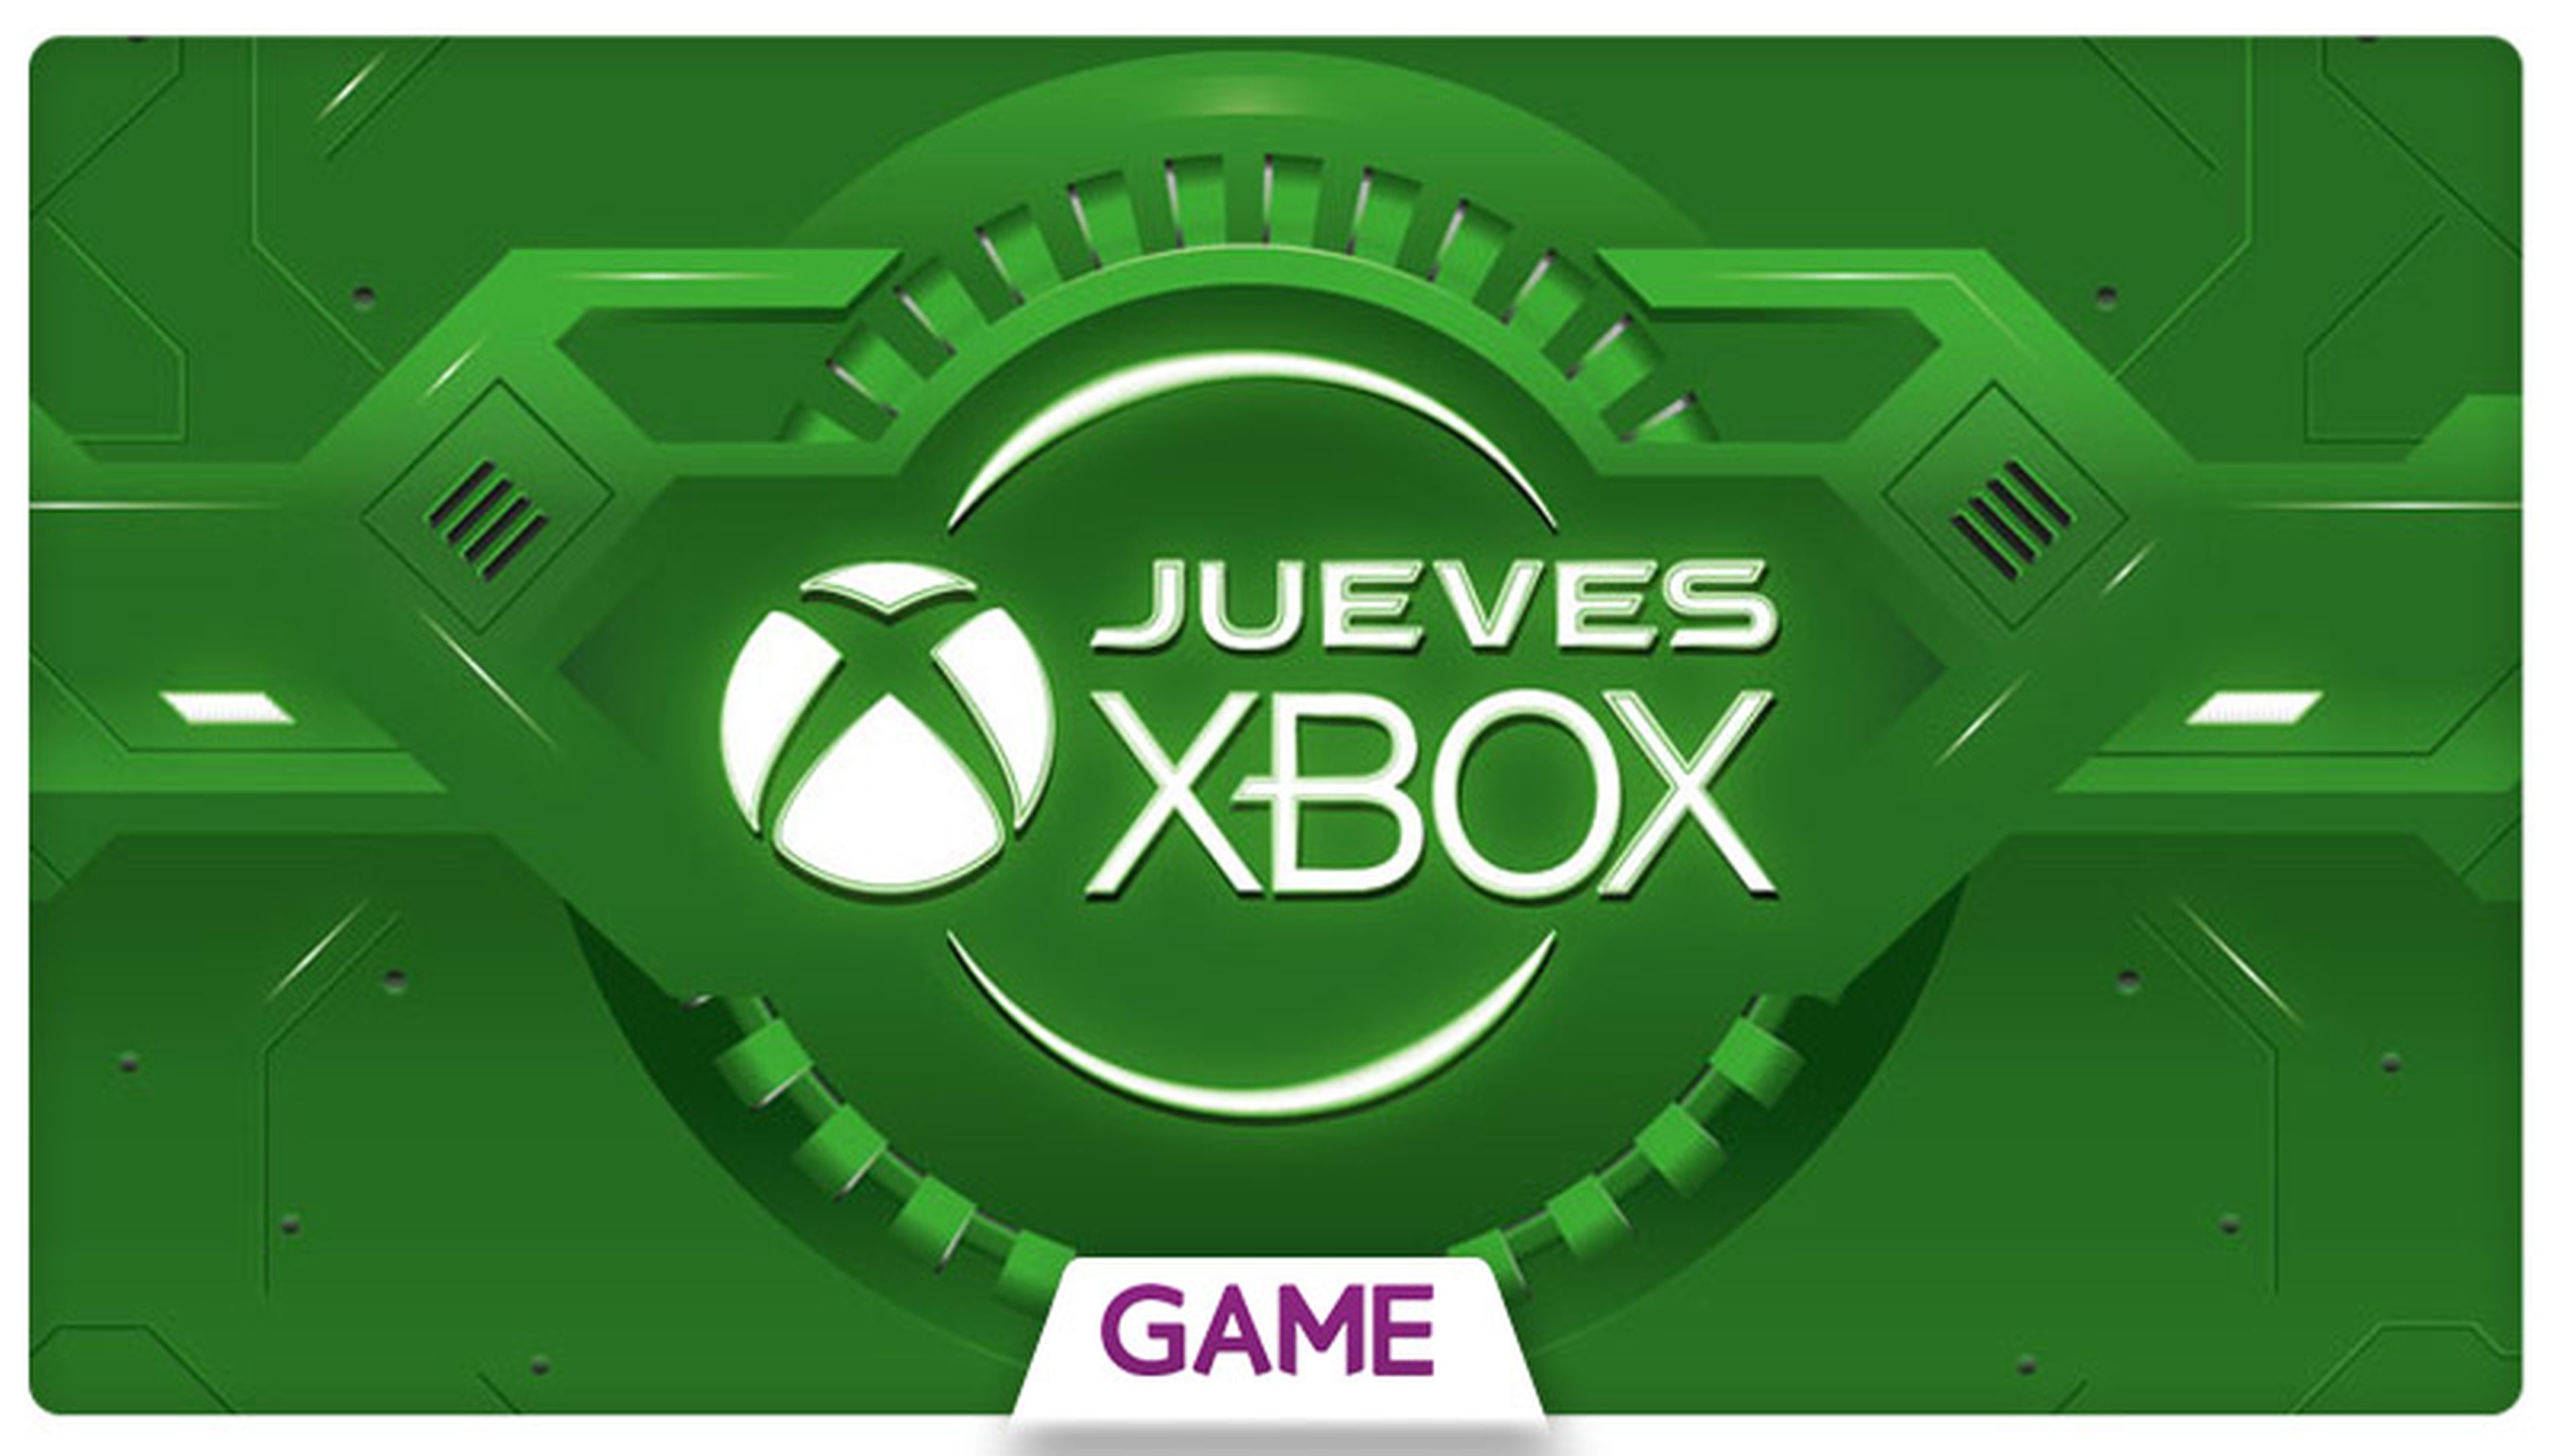 Jueves Xbox en GAME: Ofertas del 05/05/2016